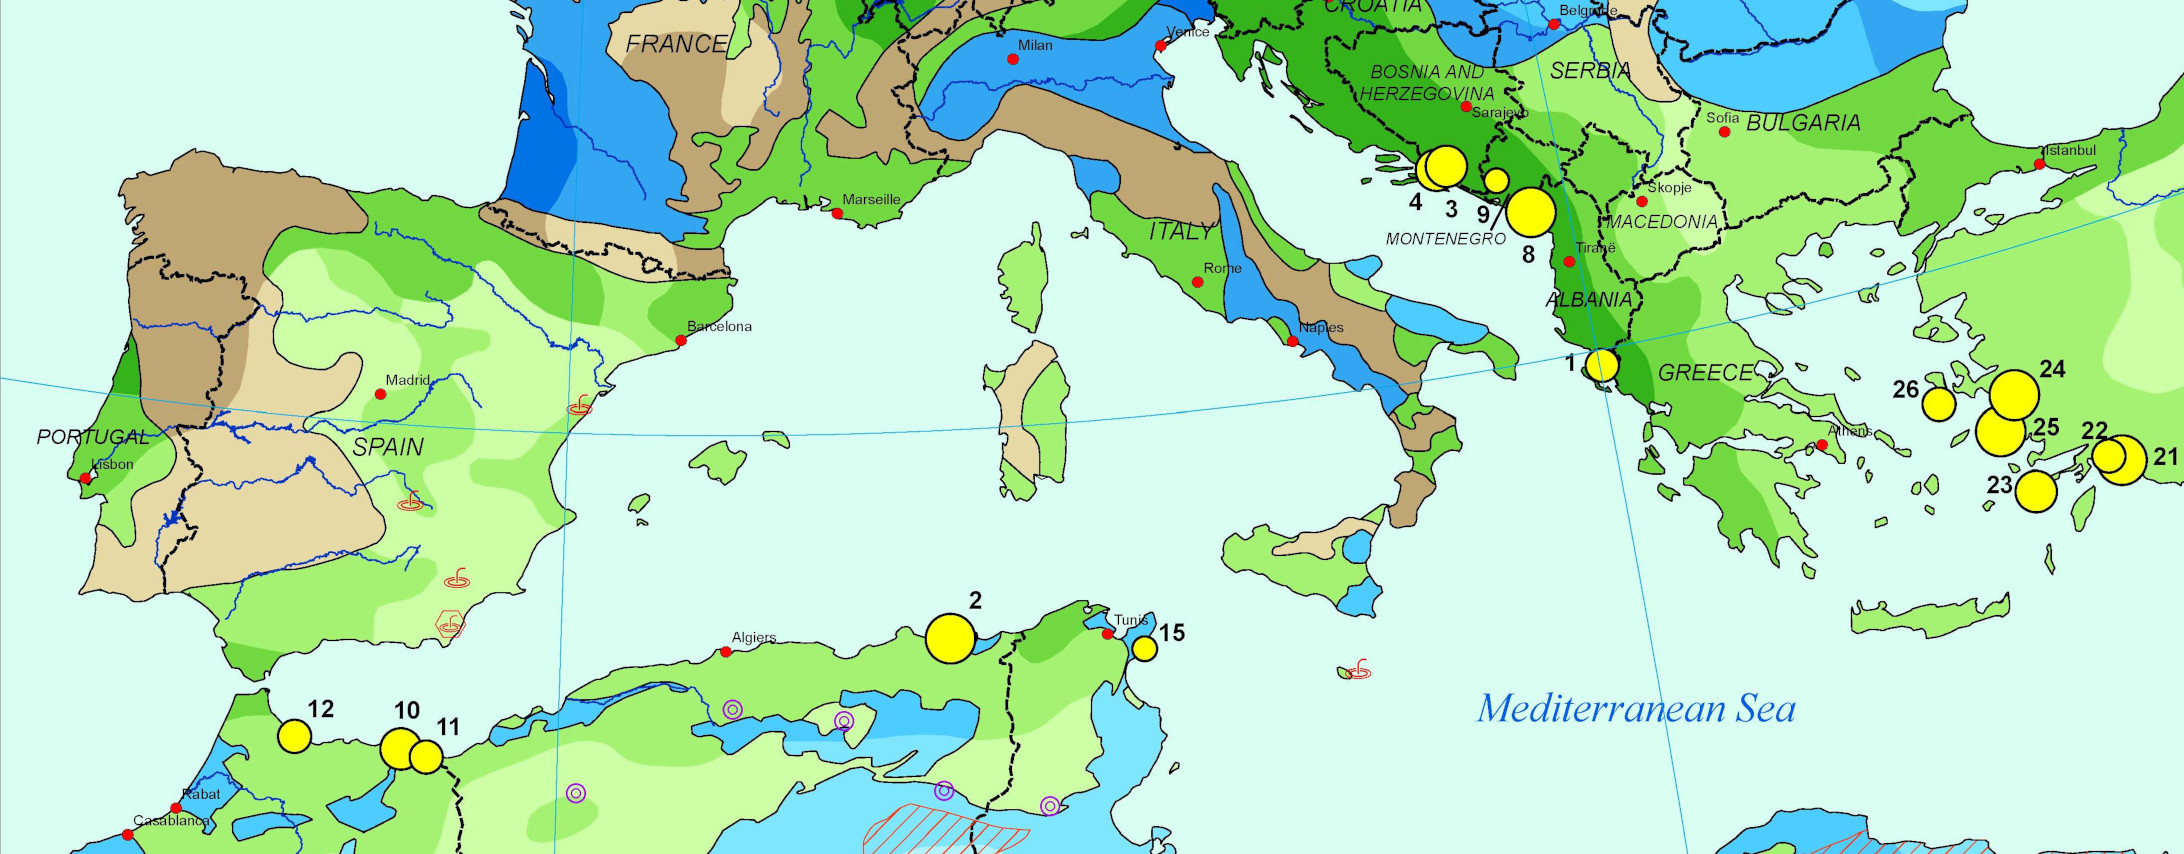 Mapa de clasificación geohidrológica y de servicios ecosistémicos de humedales costeros mediterráneos representativos relacionados con las aguas subterráneas